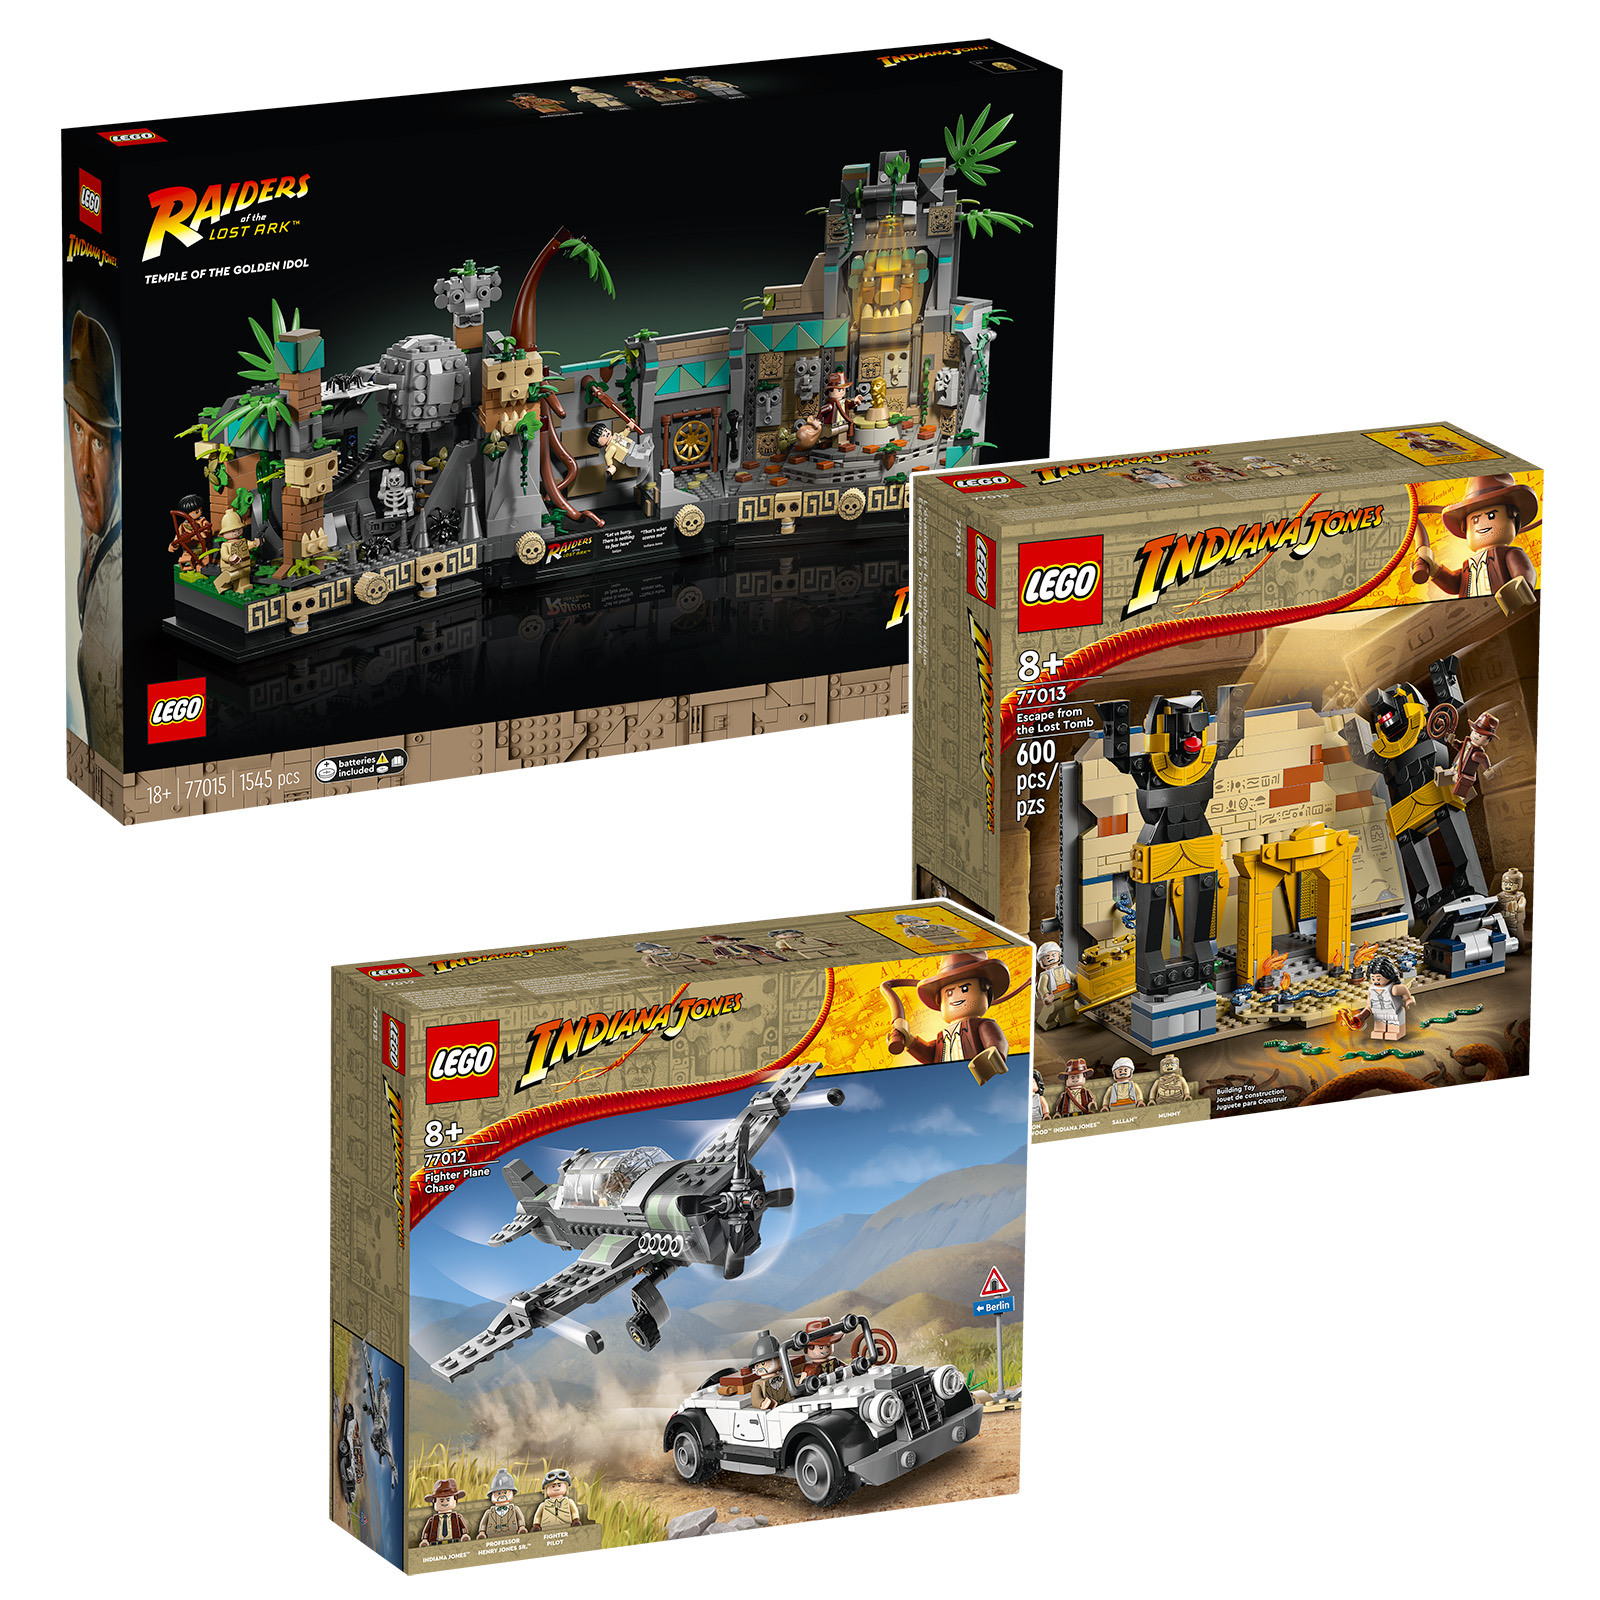 Novi kompleti LEGO Indiana Jones 2023 so na spletu v trgovini